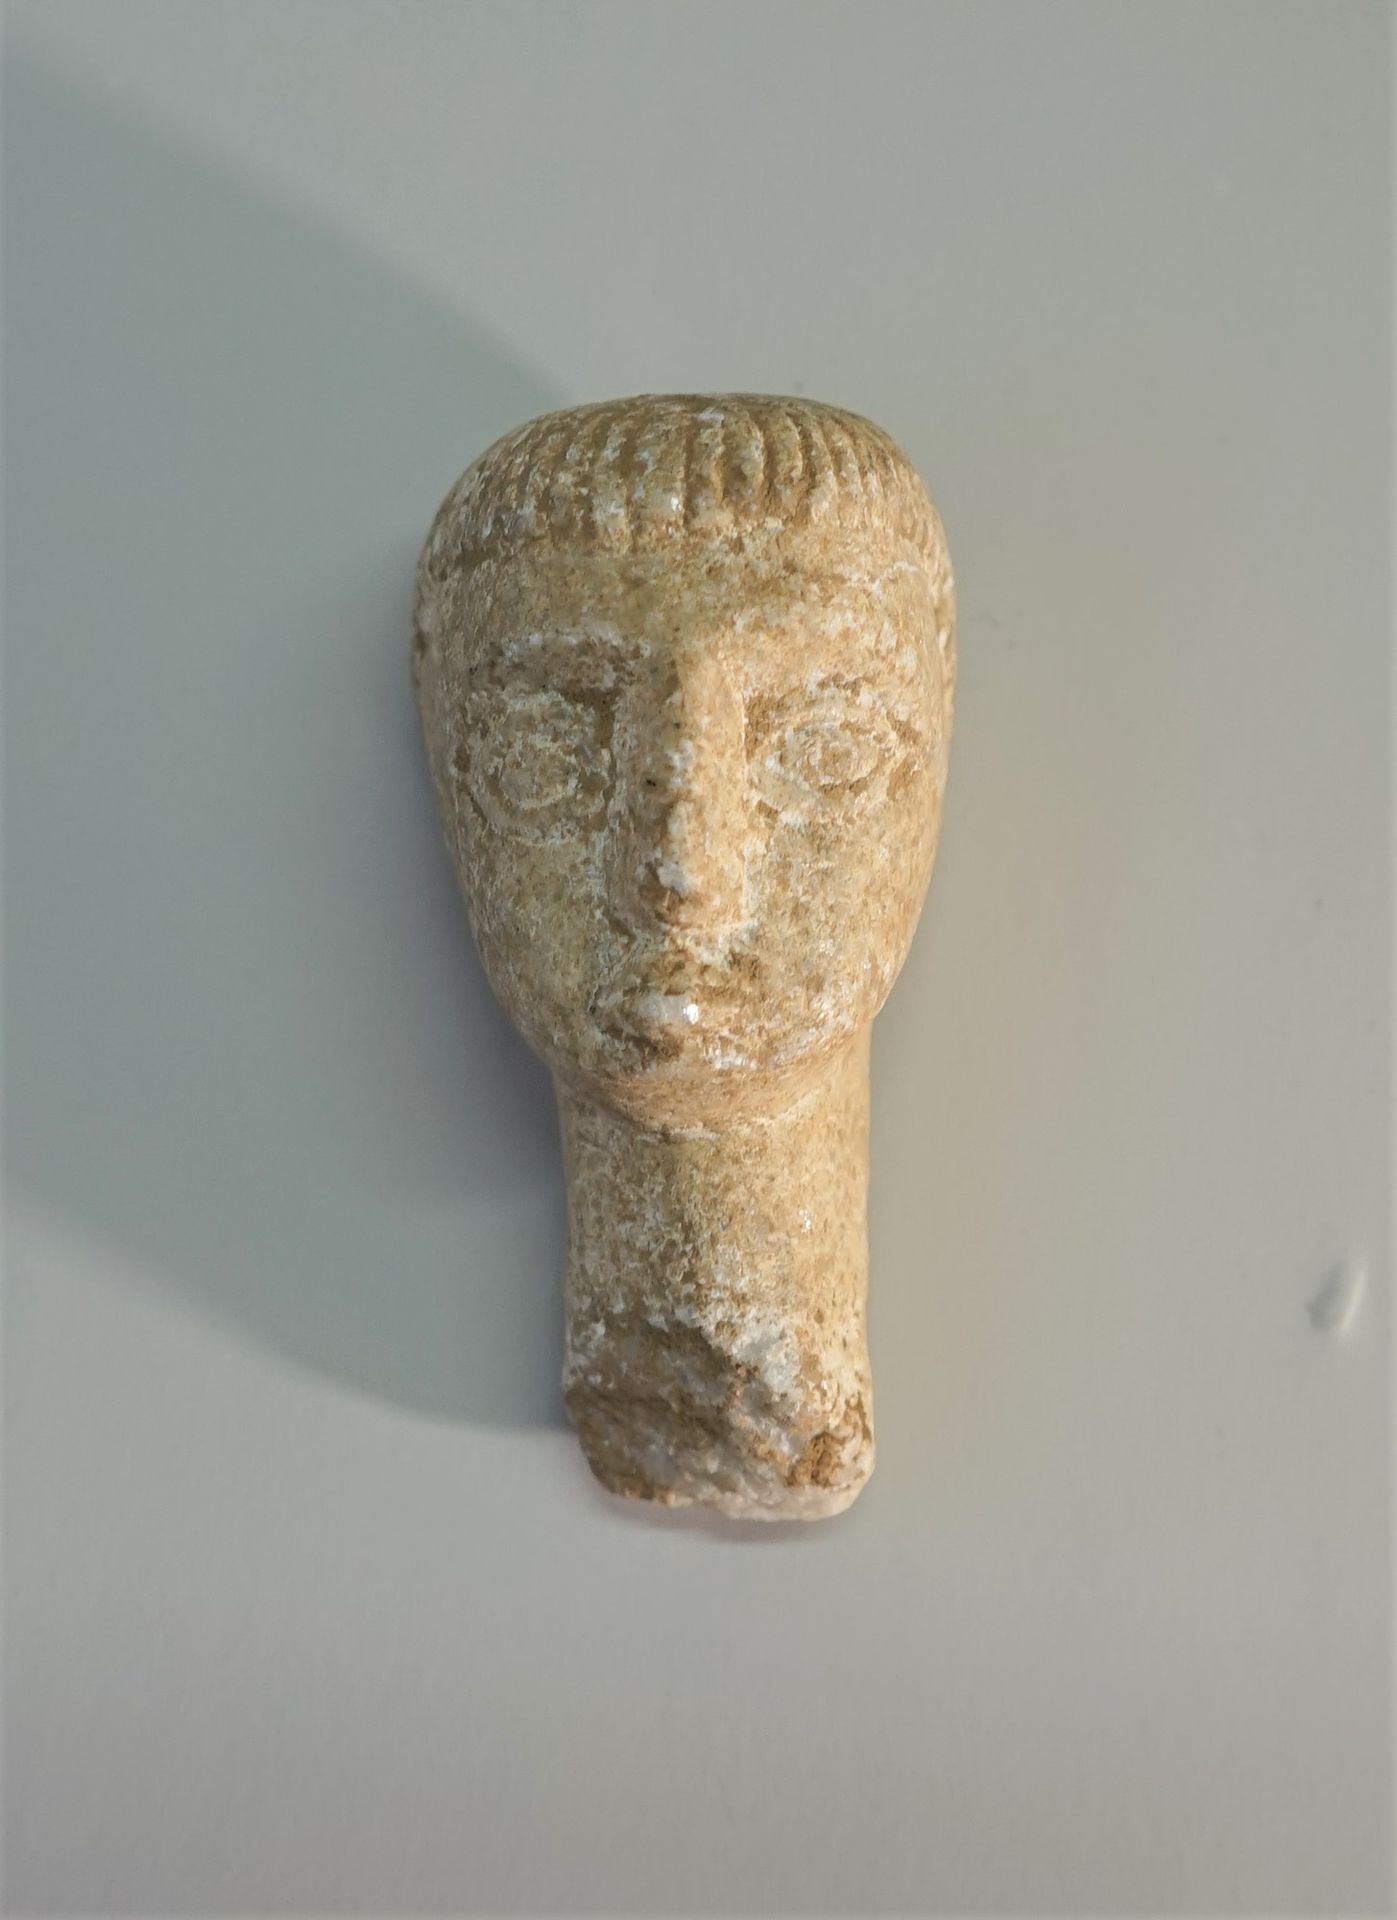 Null Kopf aus weißem Stein (Marmor) im keltischen Stil.

9cm